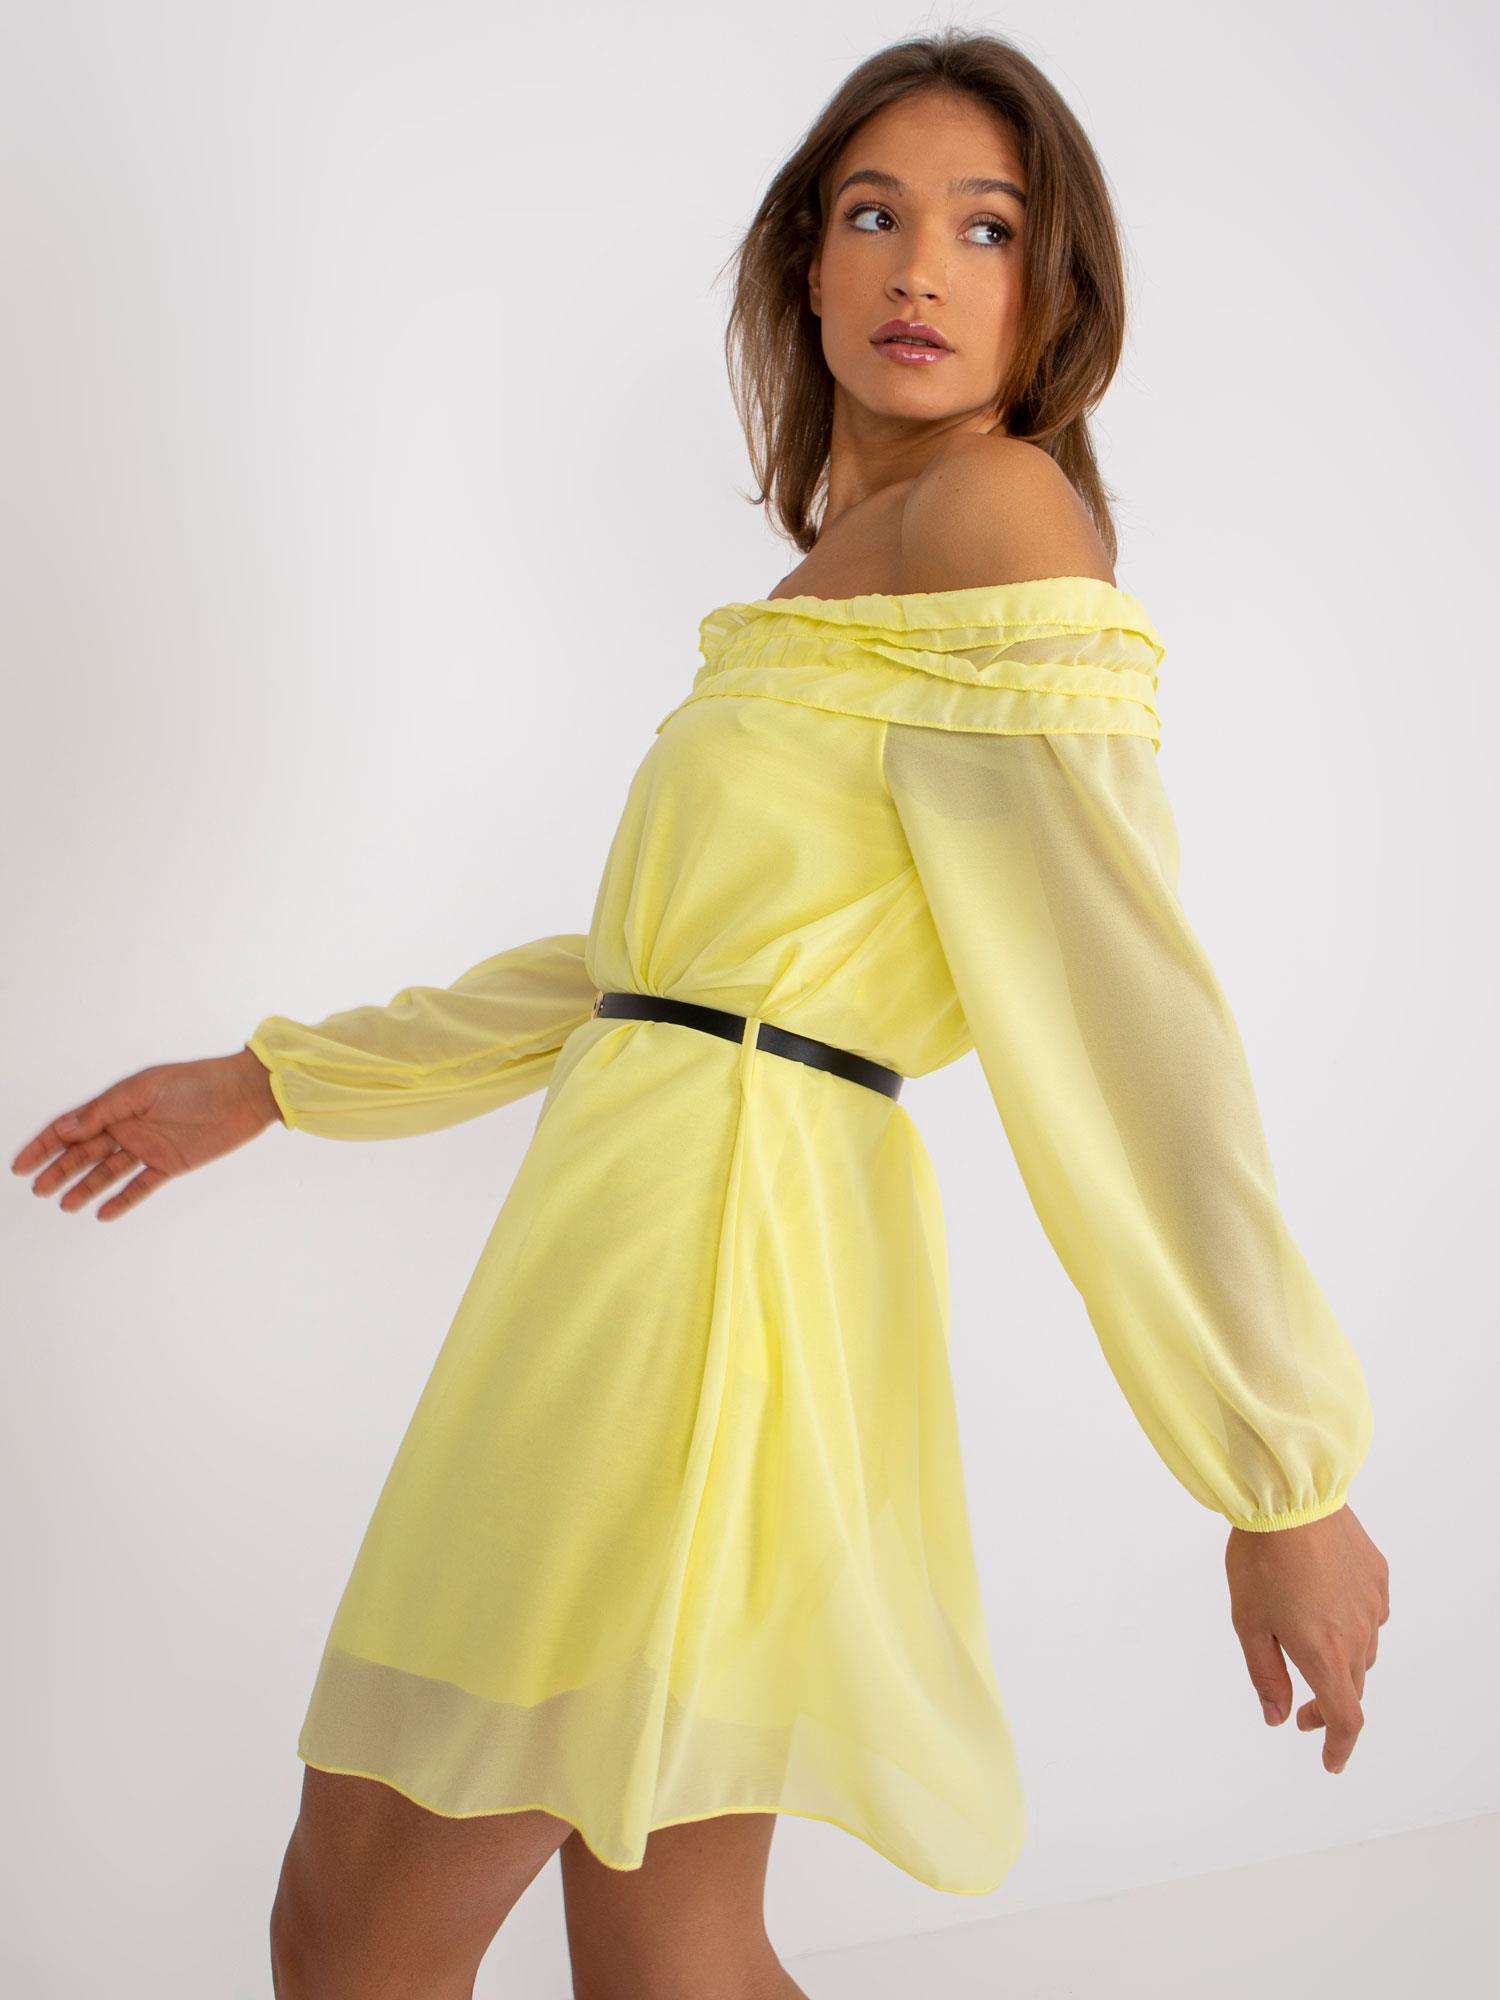 Żółte sukienki na lato – wybierz model idealny